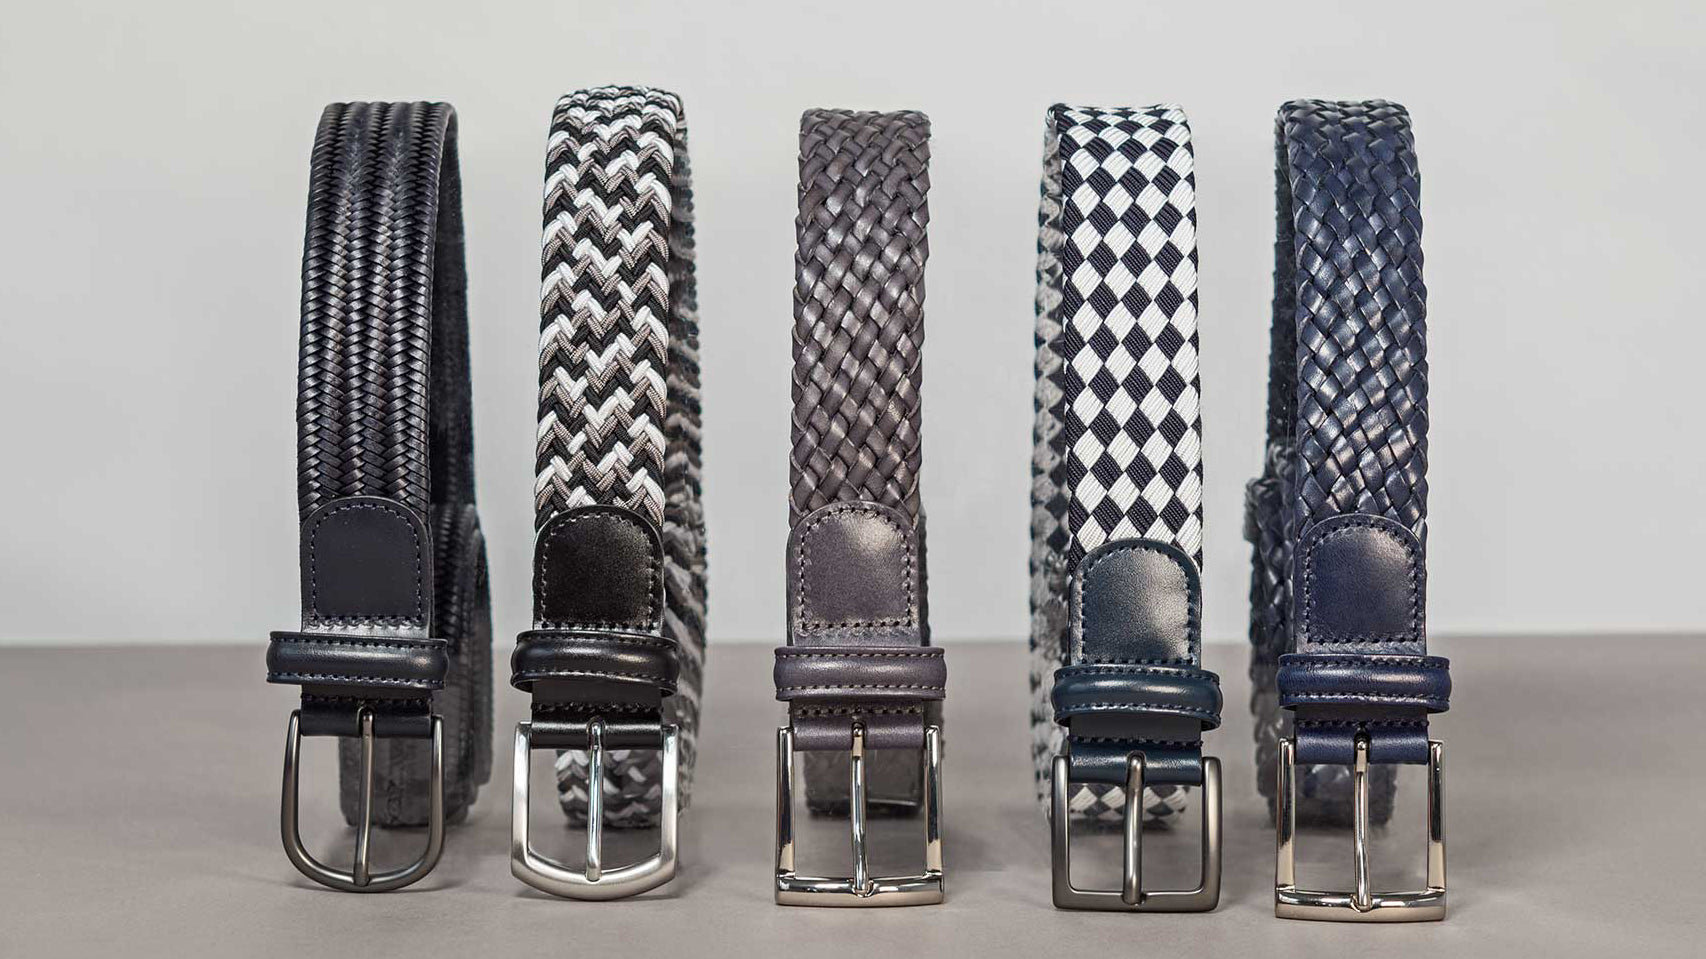 Anderson's Belts - Men's Belts – Boutique Jacques International